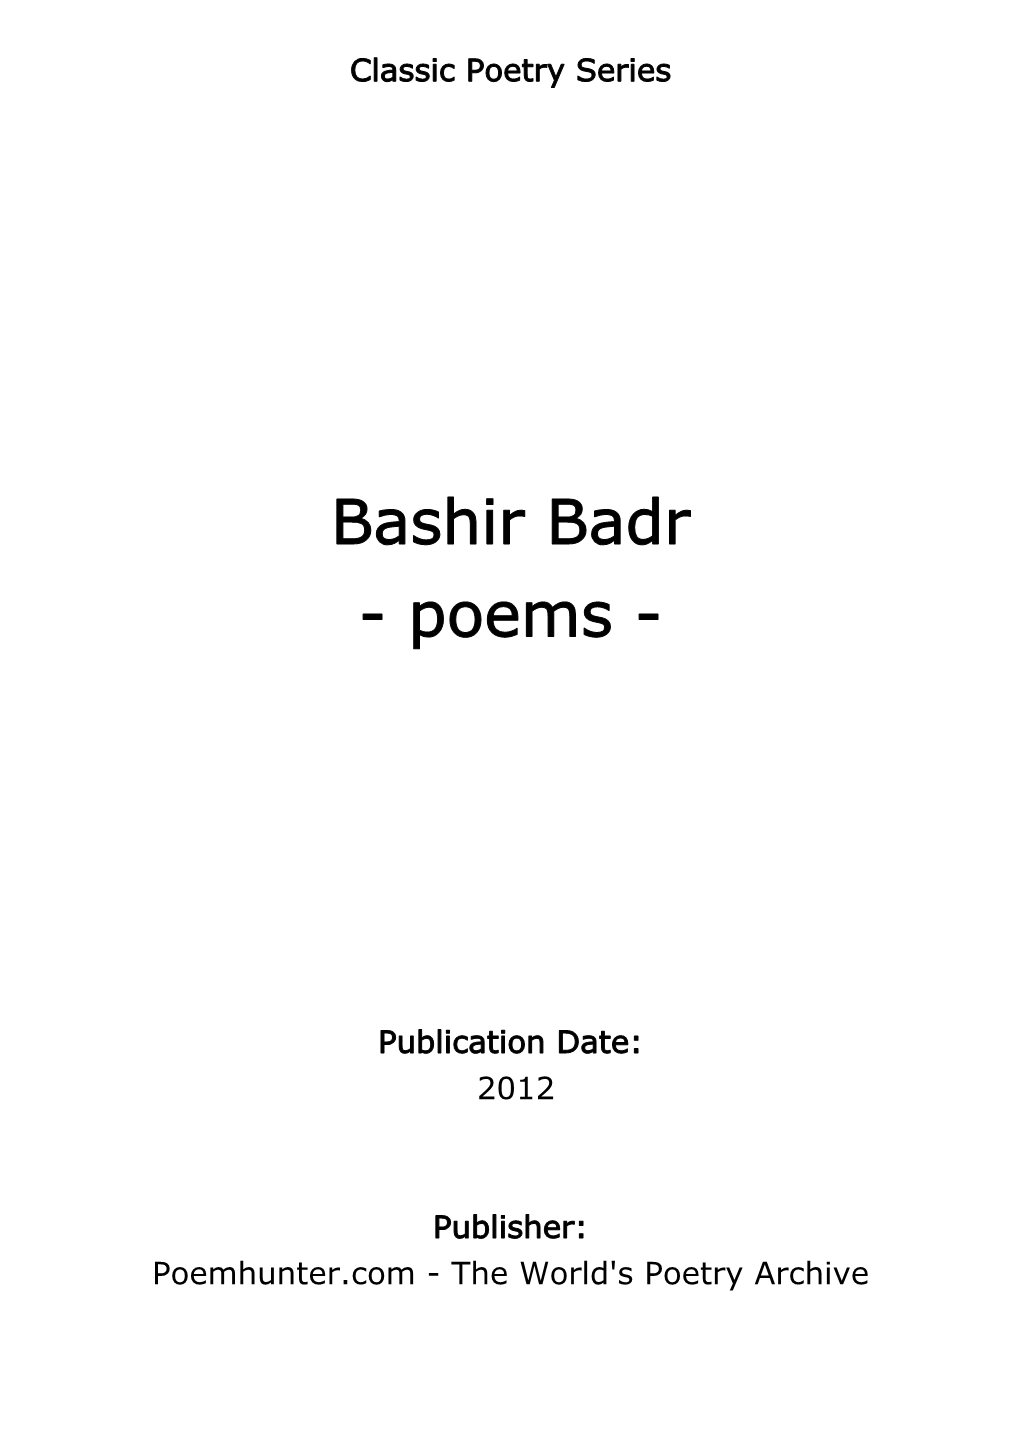 Bashir Badr - Poems